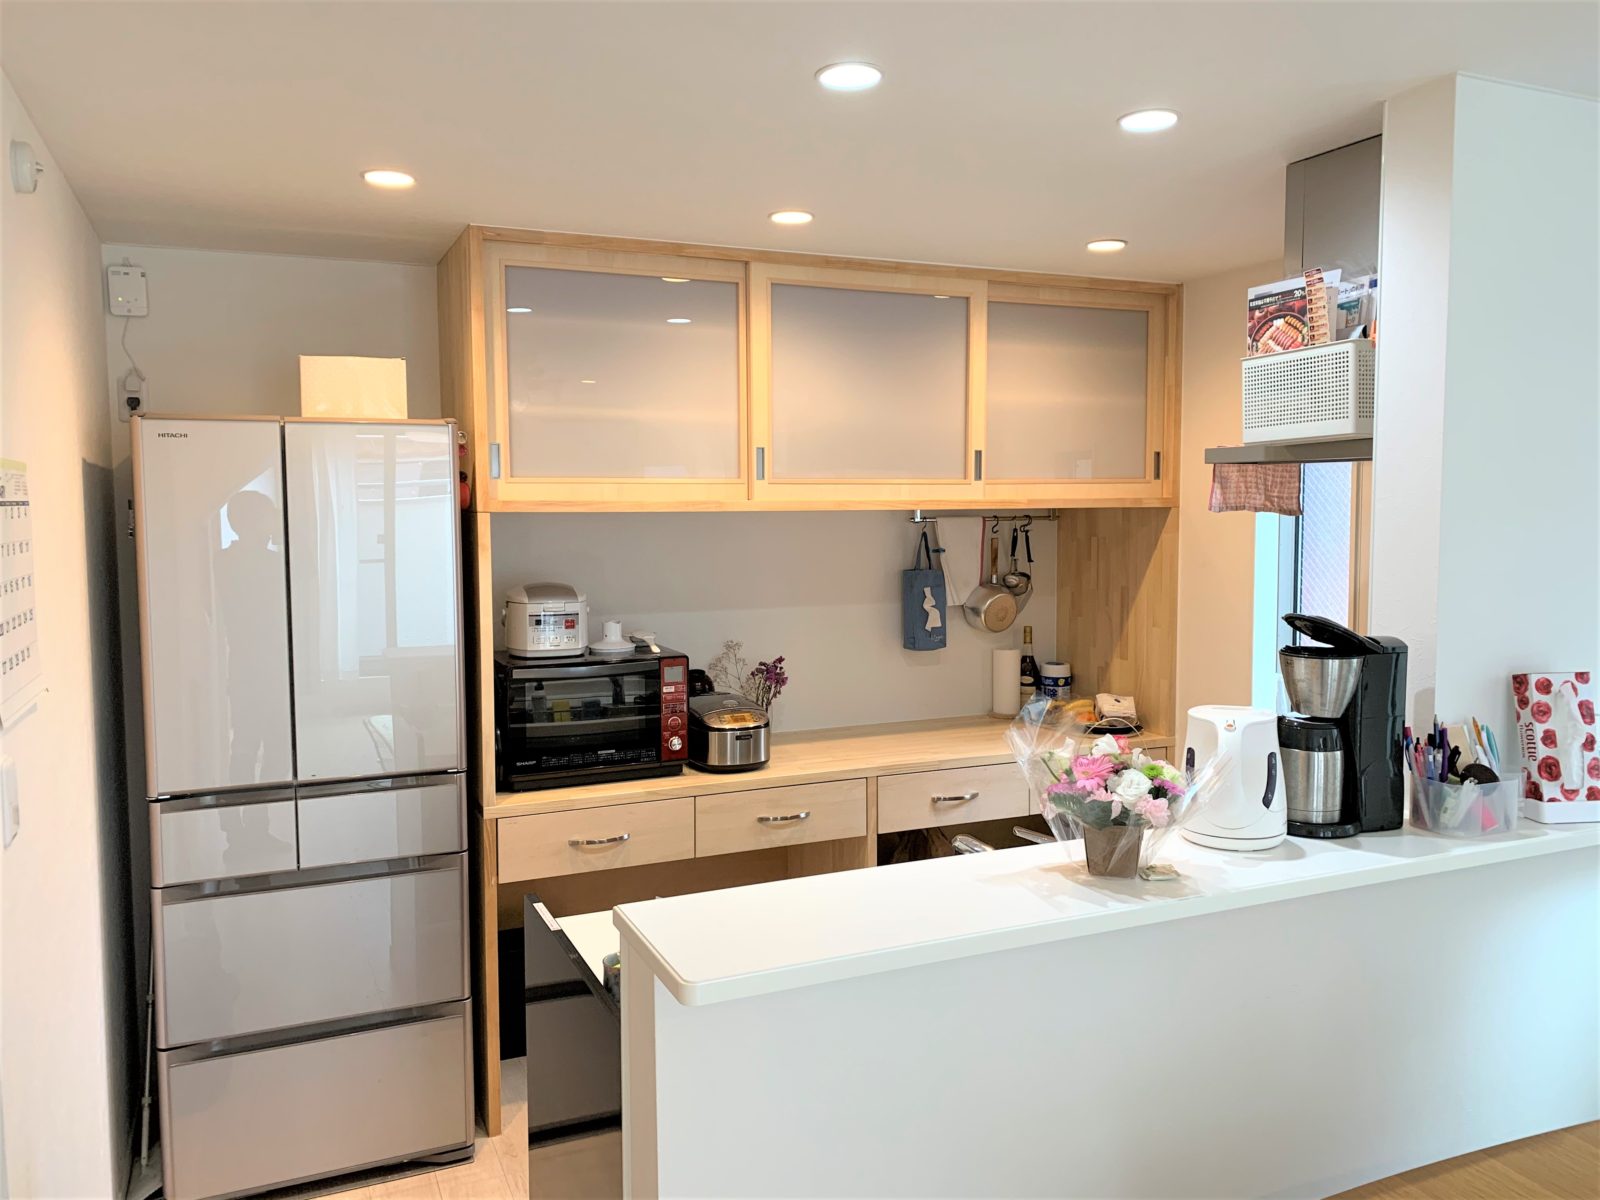 白い壁紙、明るい内装に合うナチュラルな印象のキッチン